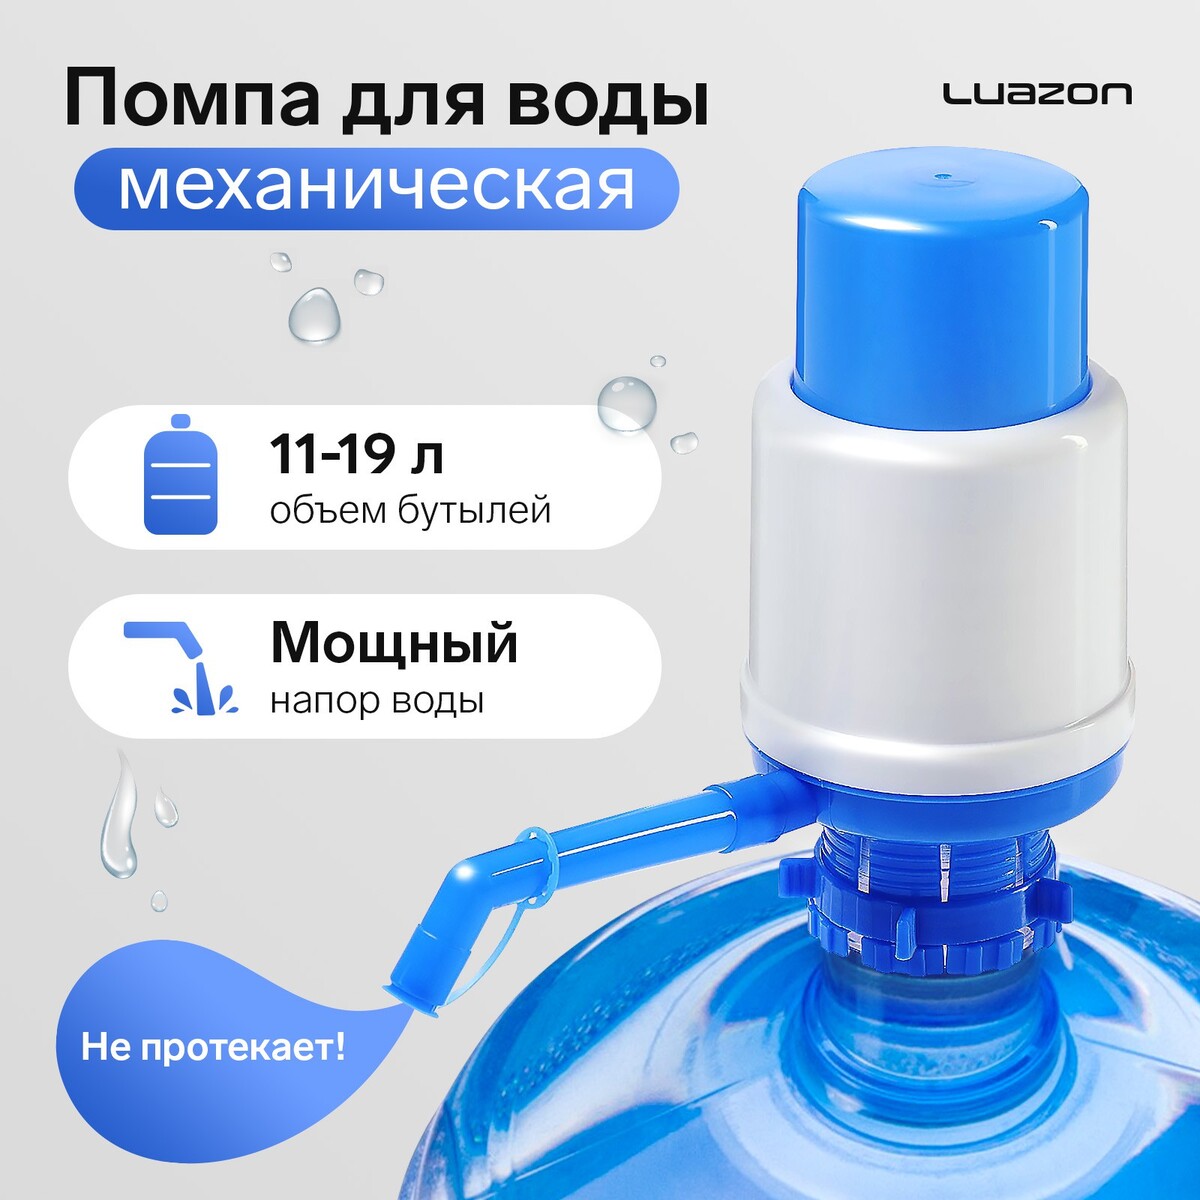 Помпа для воды luazon, механическая, большая, под бутыль от 11 до 19 л, голубая помпа для воды luazon механическая средняя под бутыль от 11 до 19 л голубая